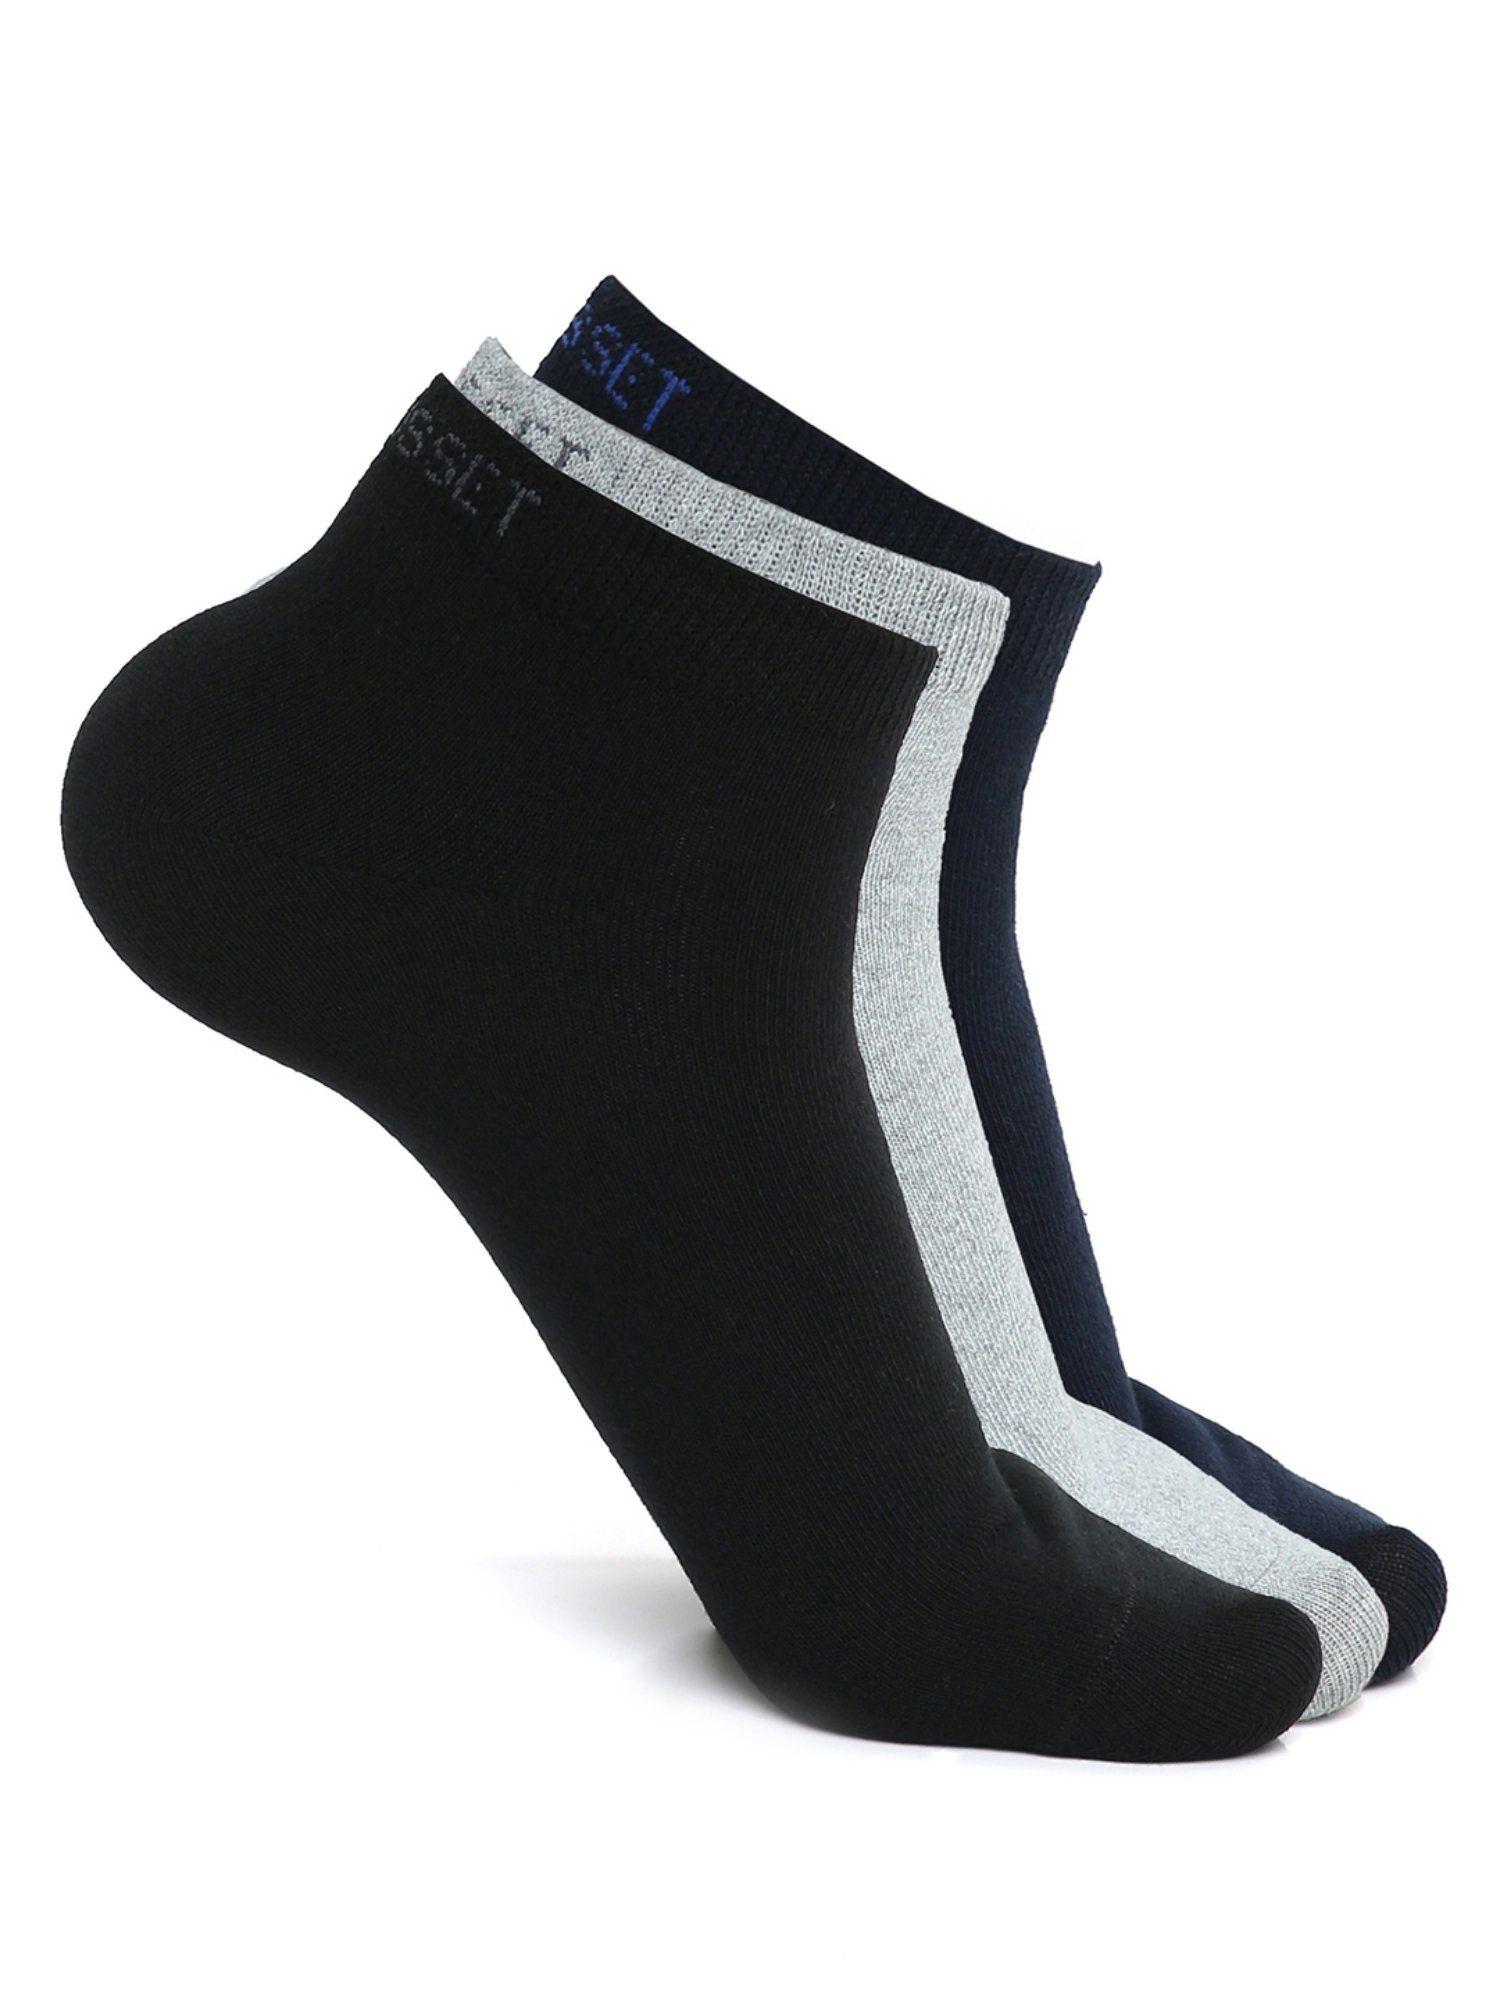 men low cut pack of 3 socks in multi-color